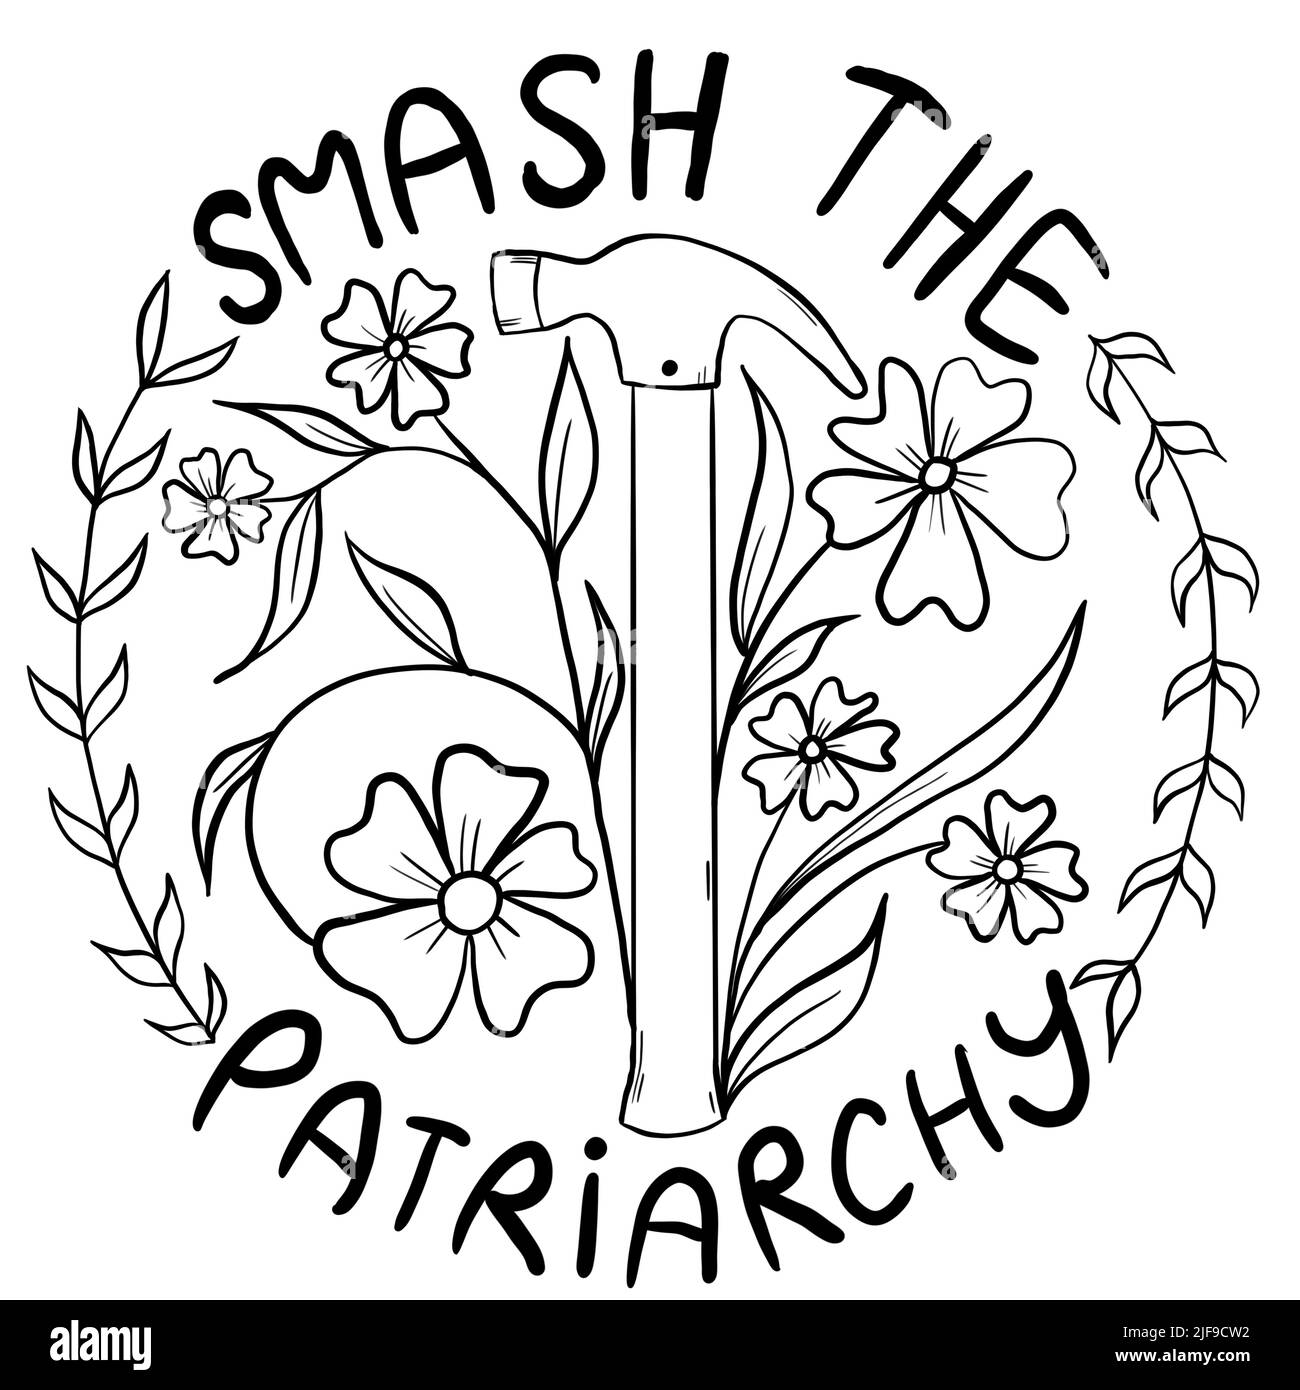 Destruye la ilustración del patriarcado dibujada a mano con flores de martillo. Concepto de activismo feminista, derechos reproductivos al aborto, diseño de fila v uada Foto de stock